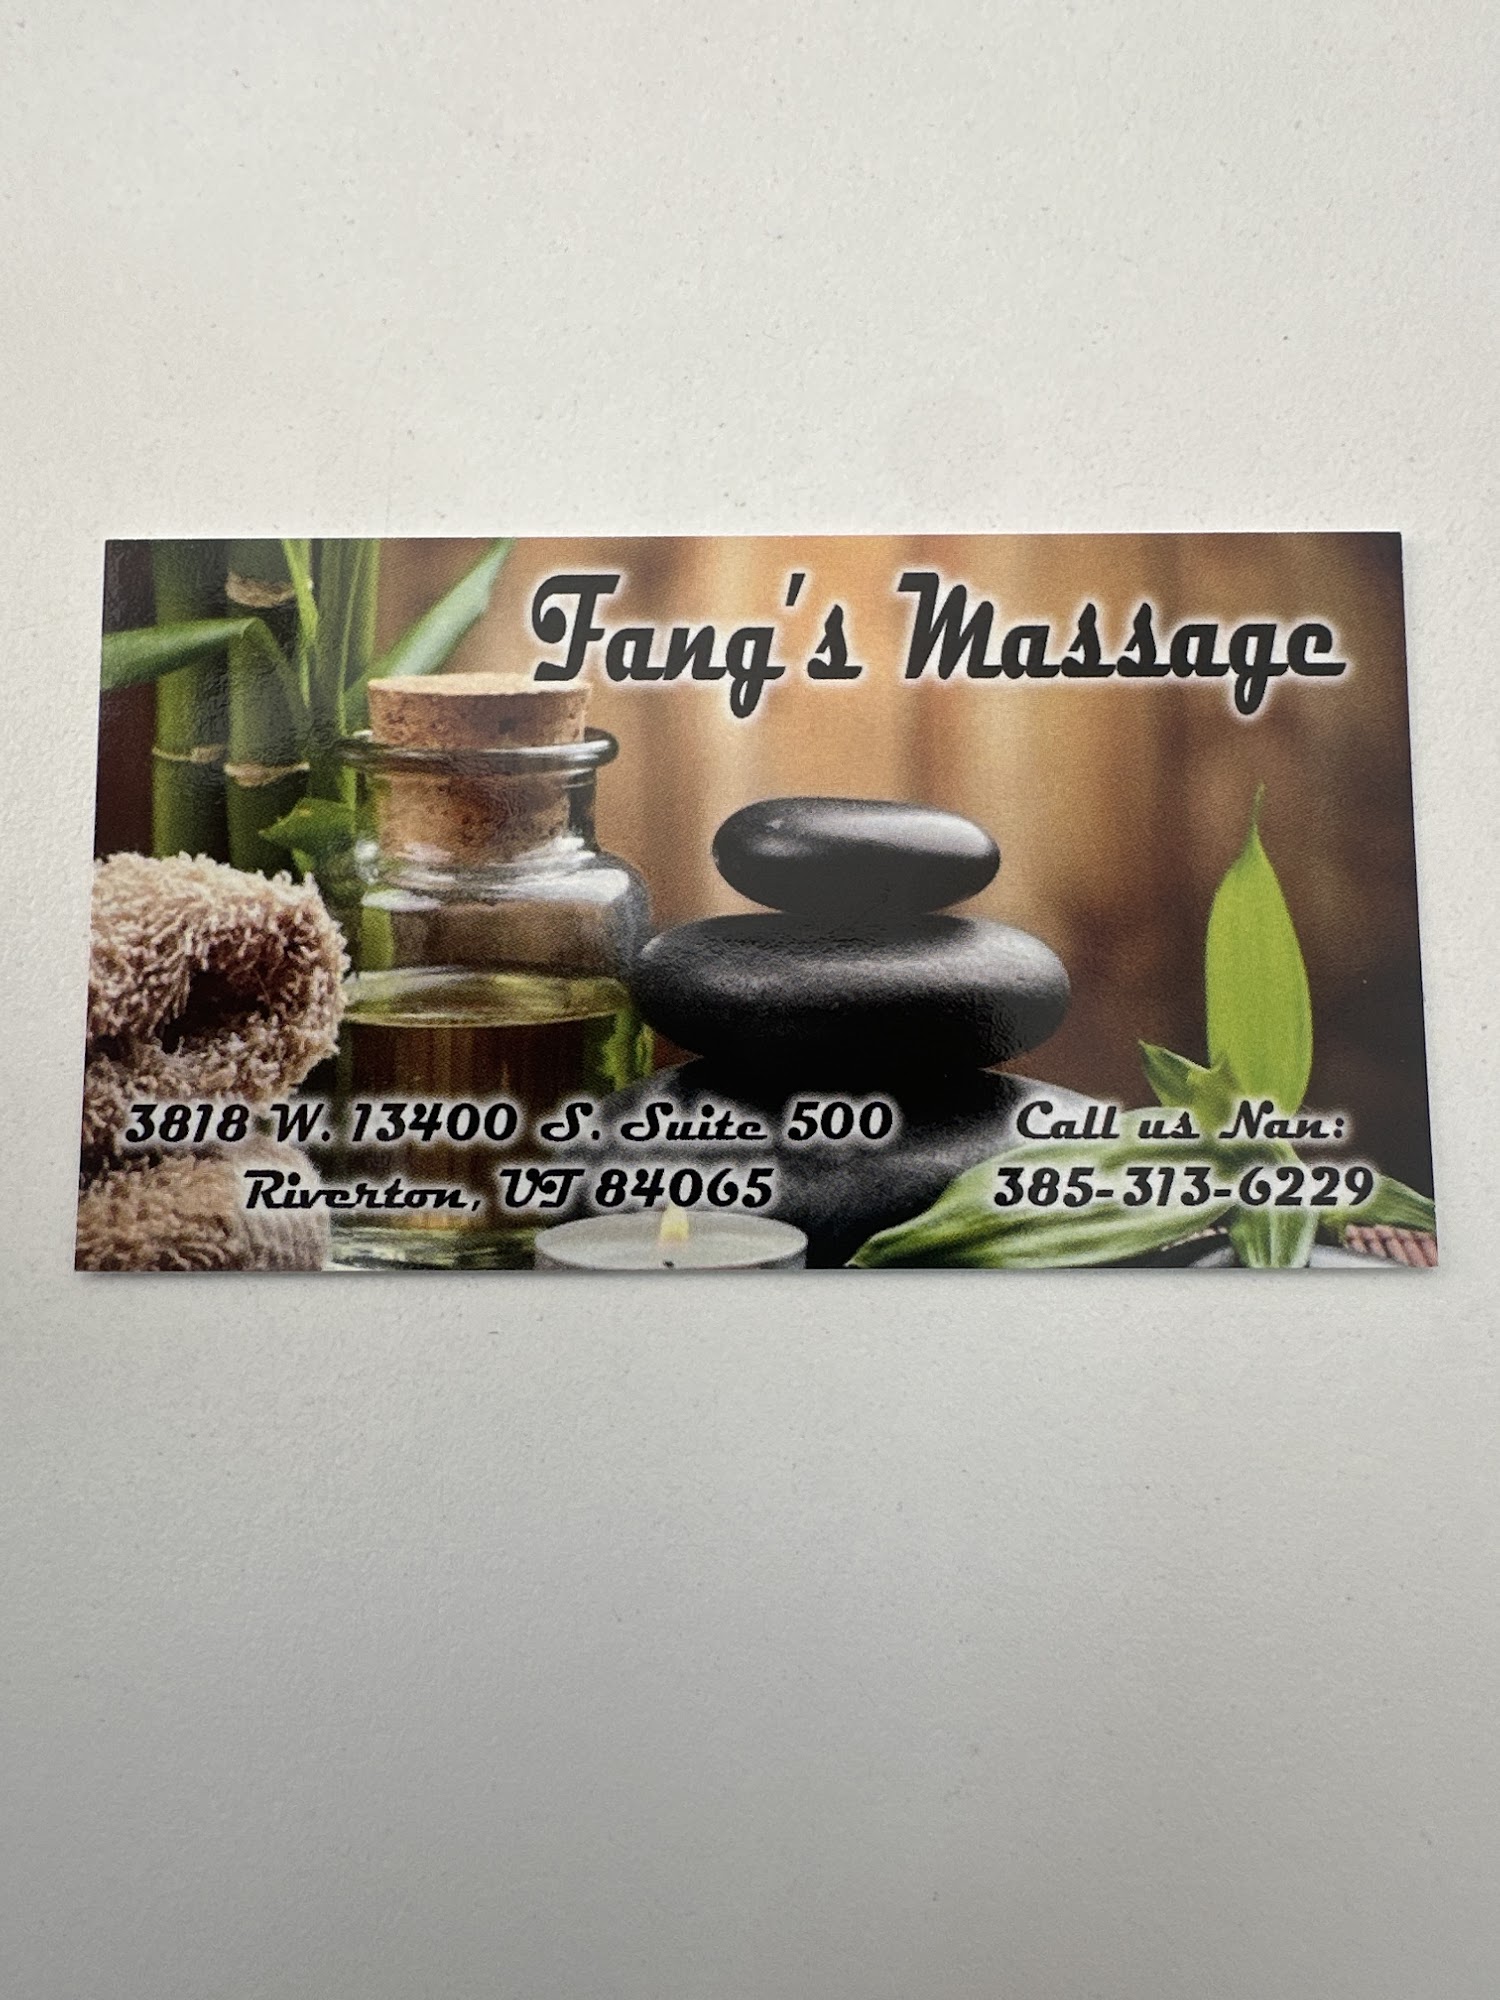 Fang's Massage